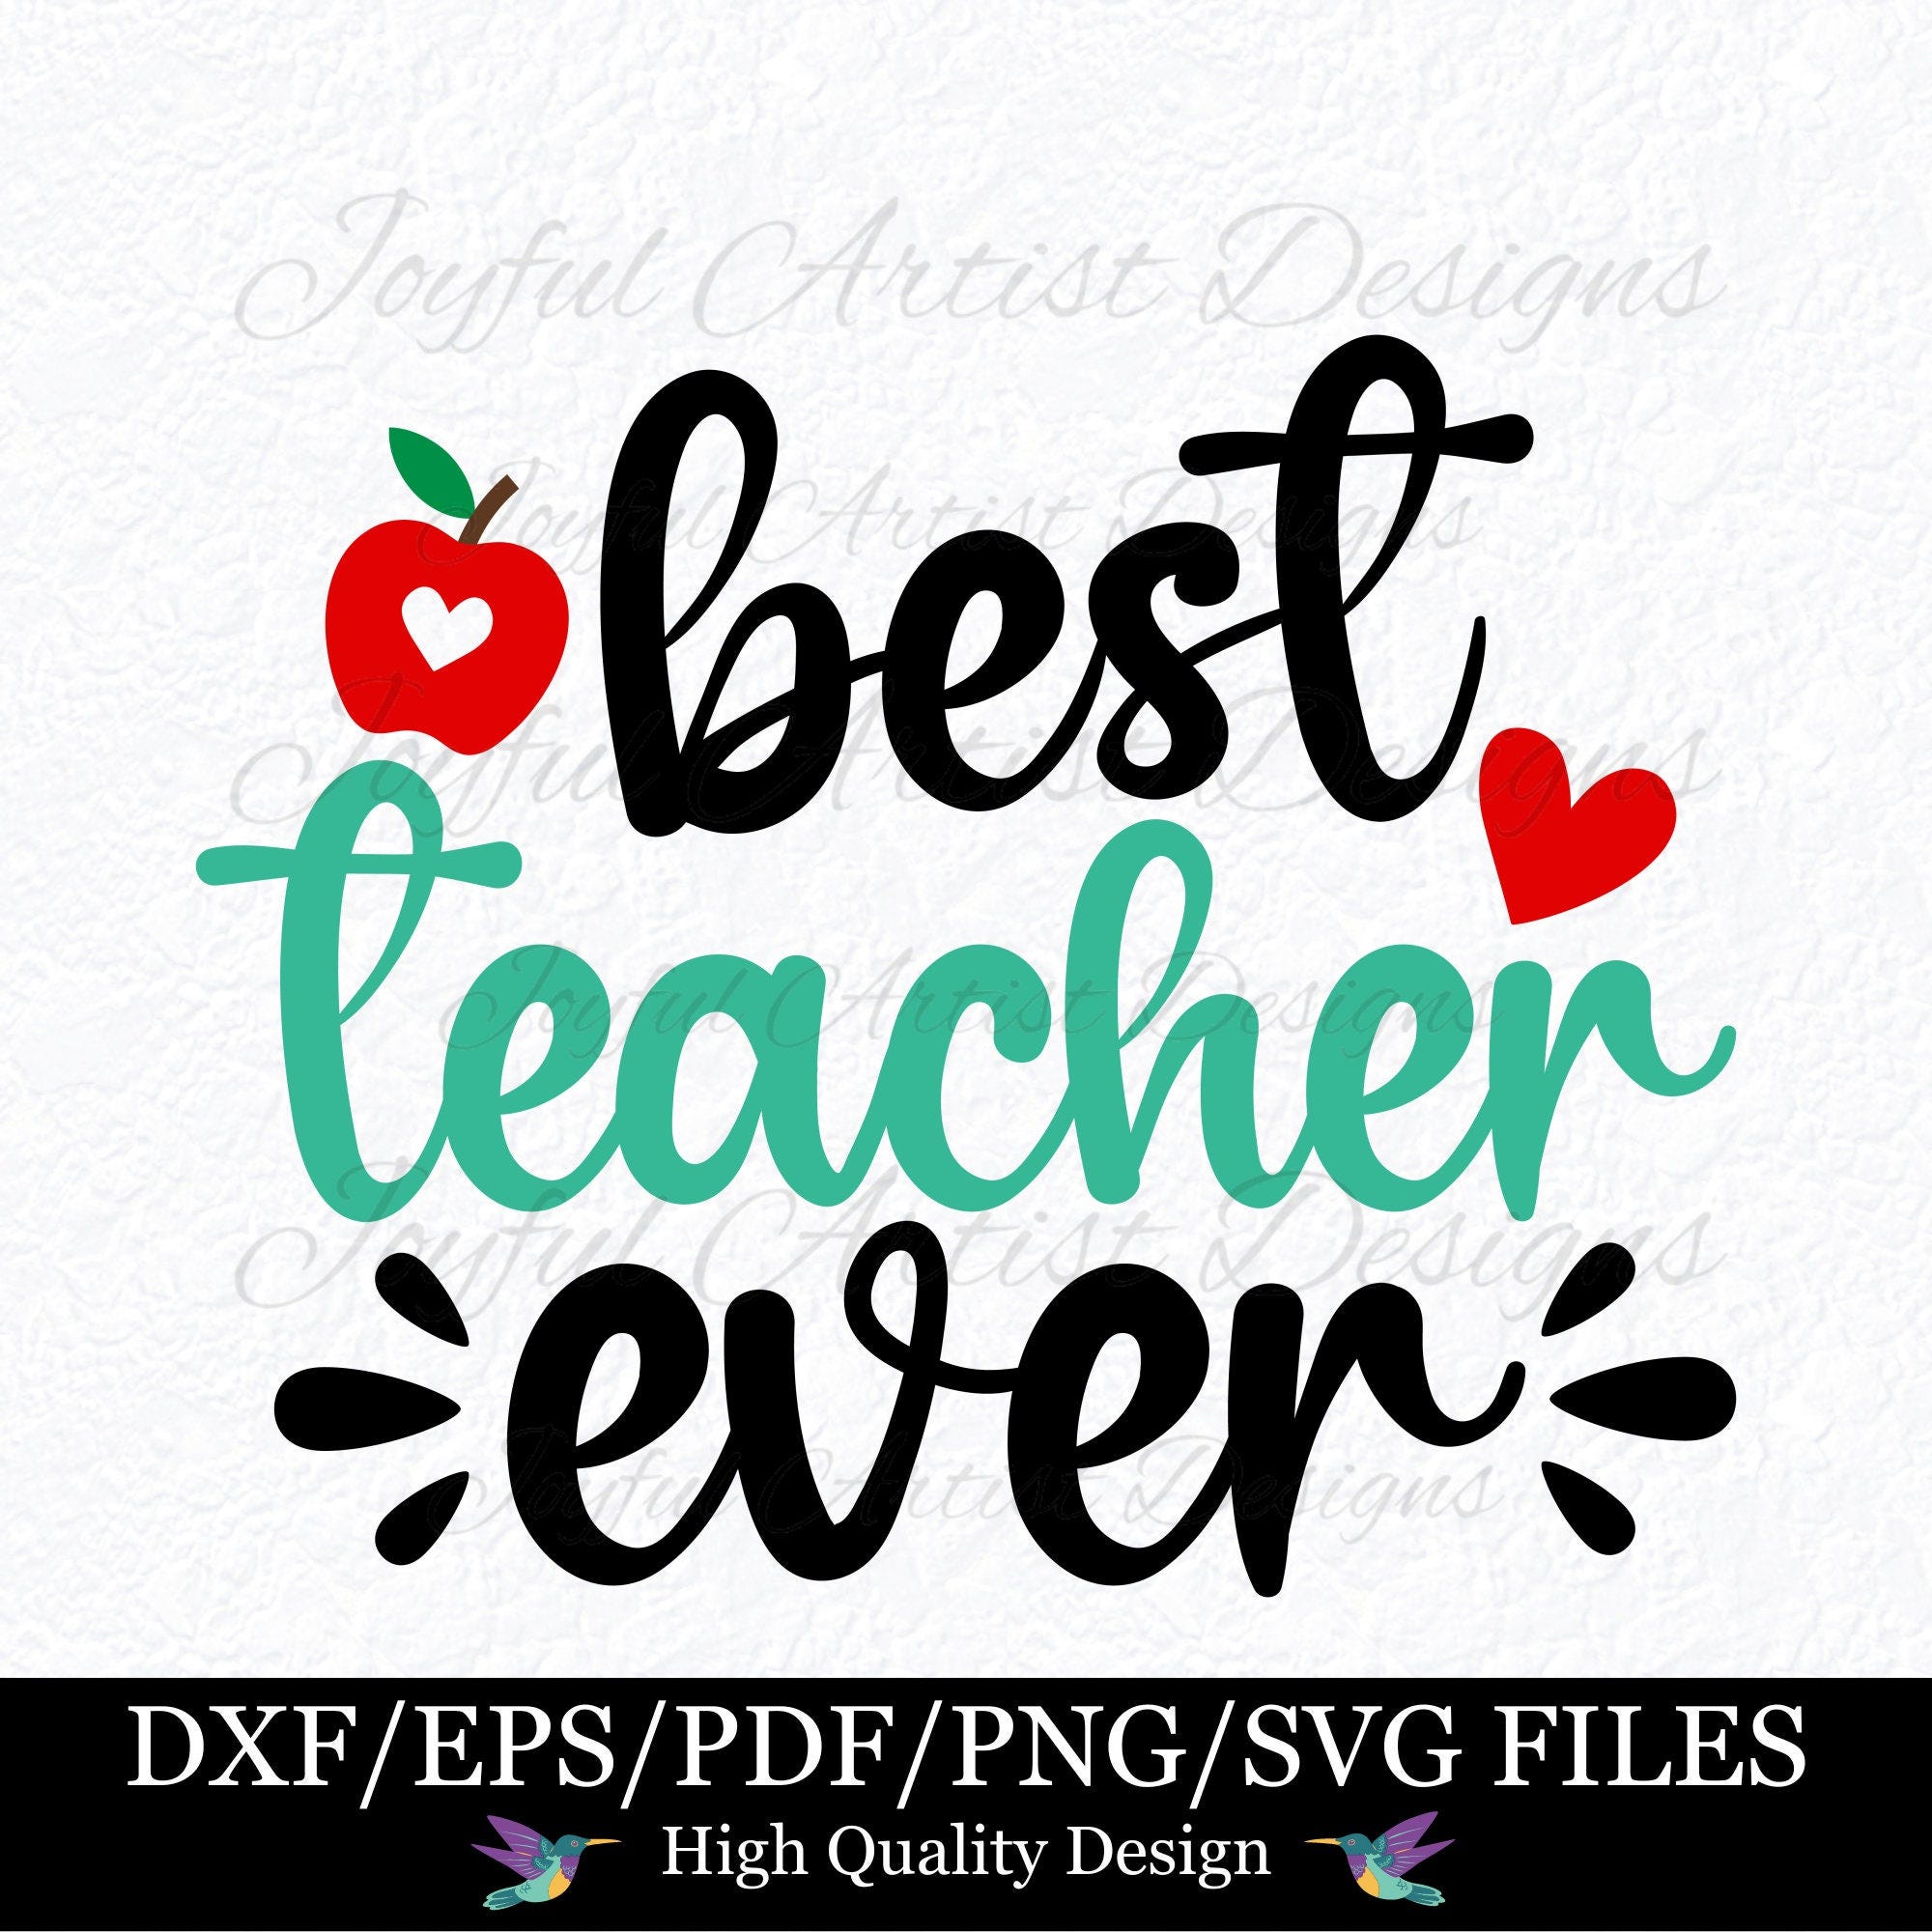 Best Teacher Ever Teacher SVG for Stickers Mugs Cards Cups Teacher Thank You Teacher